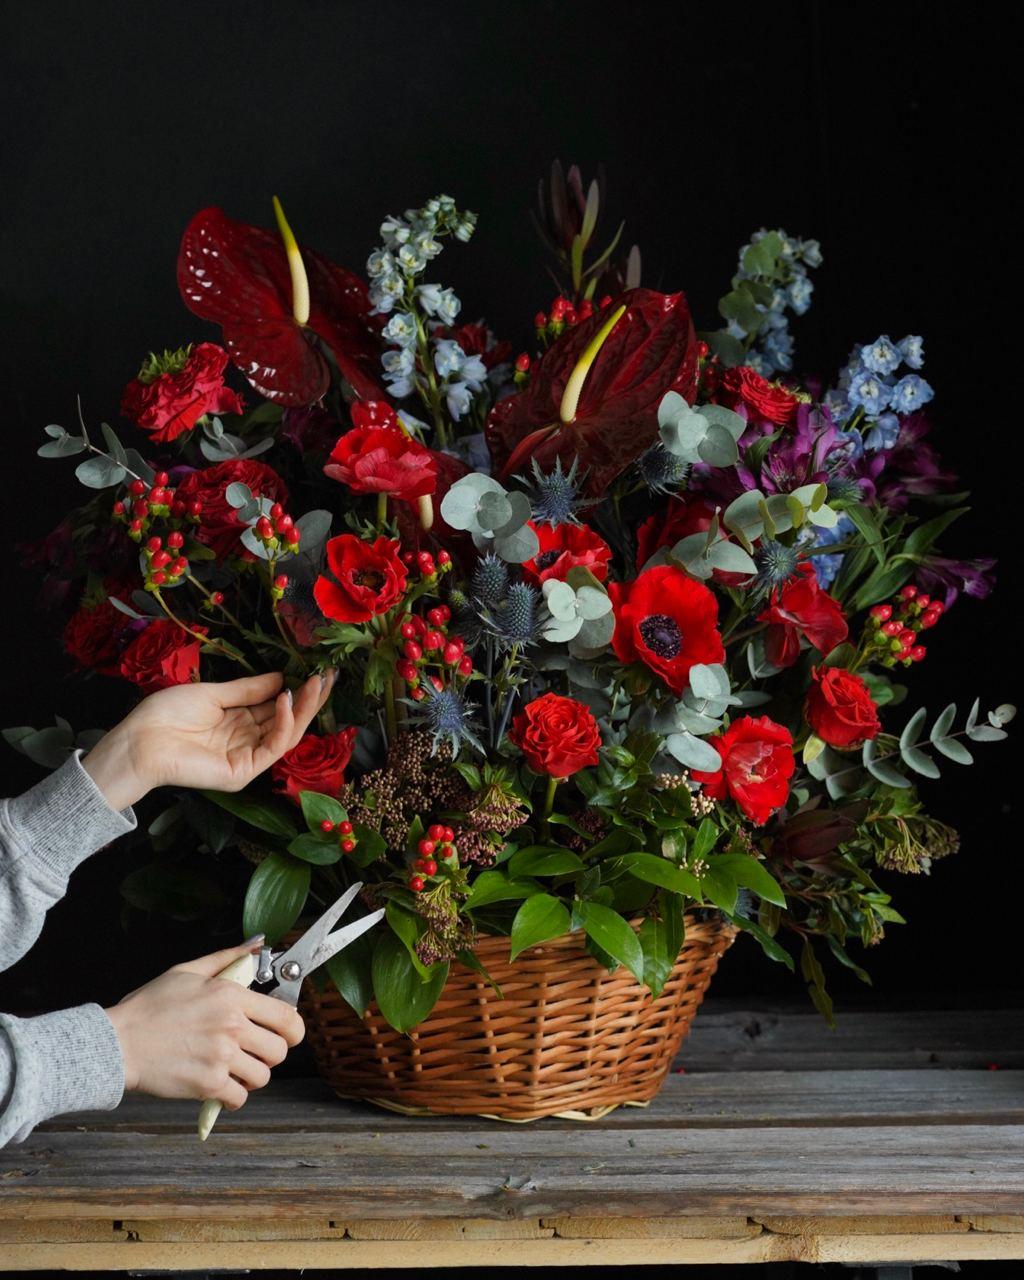 Zamów bukiet kwiatów stworzony dzięki sztucznej inteligencji